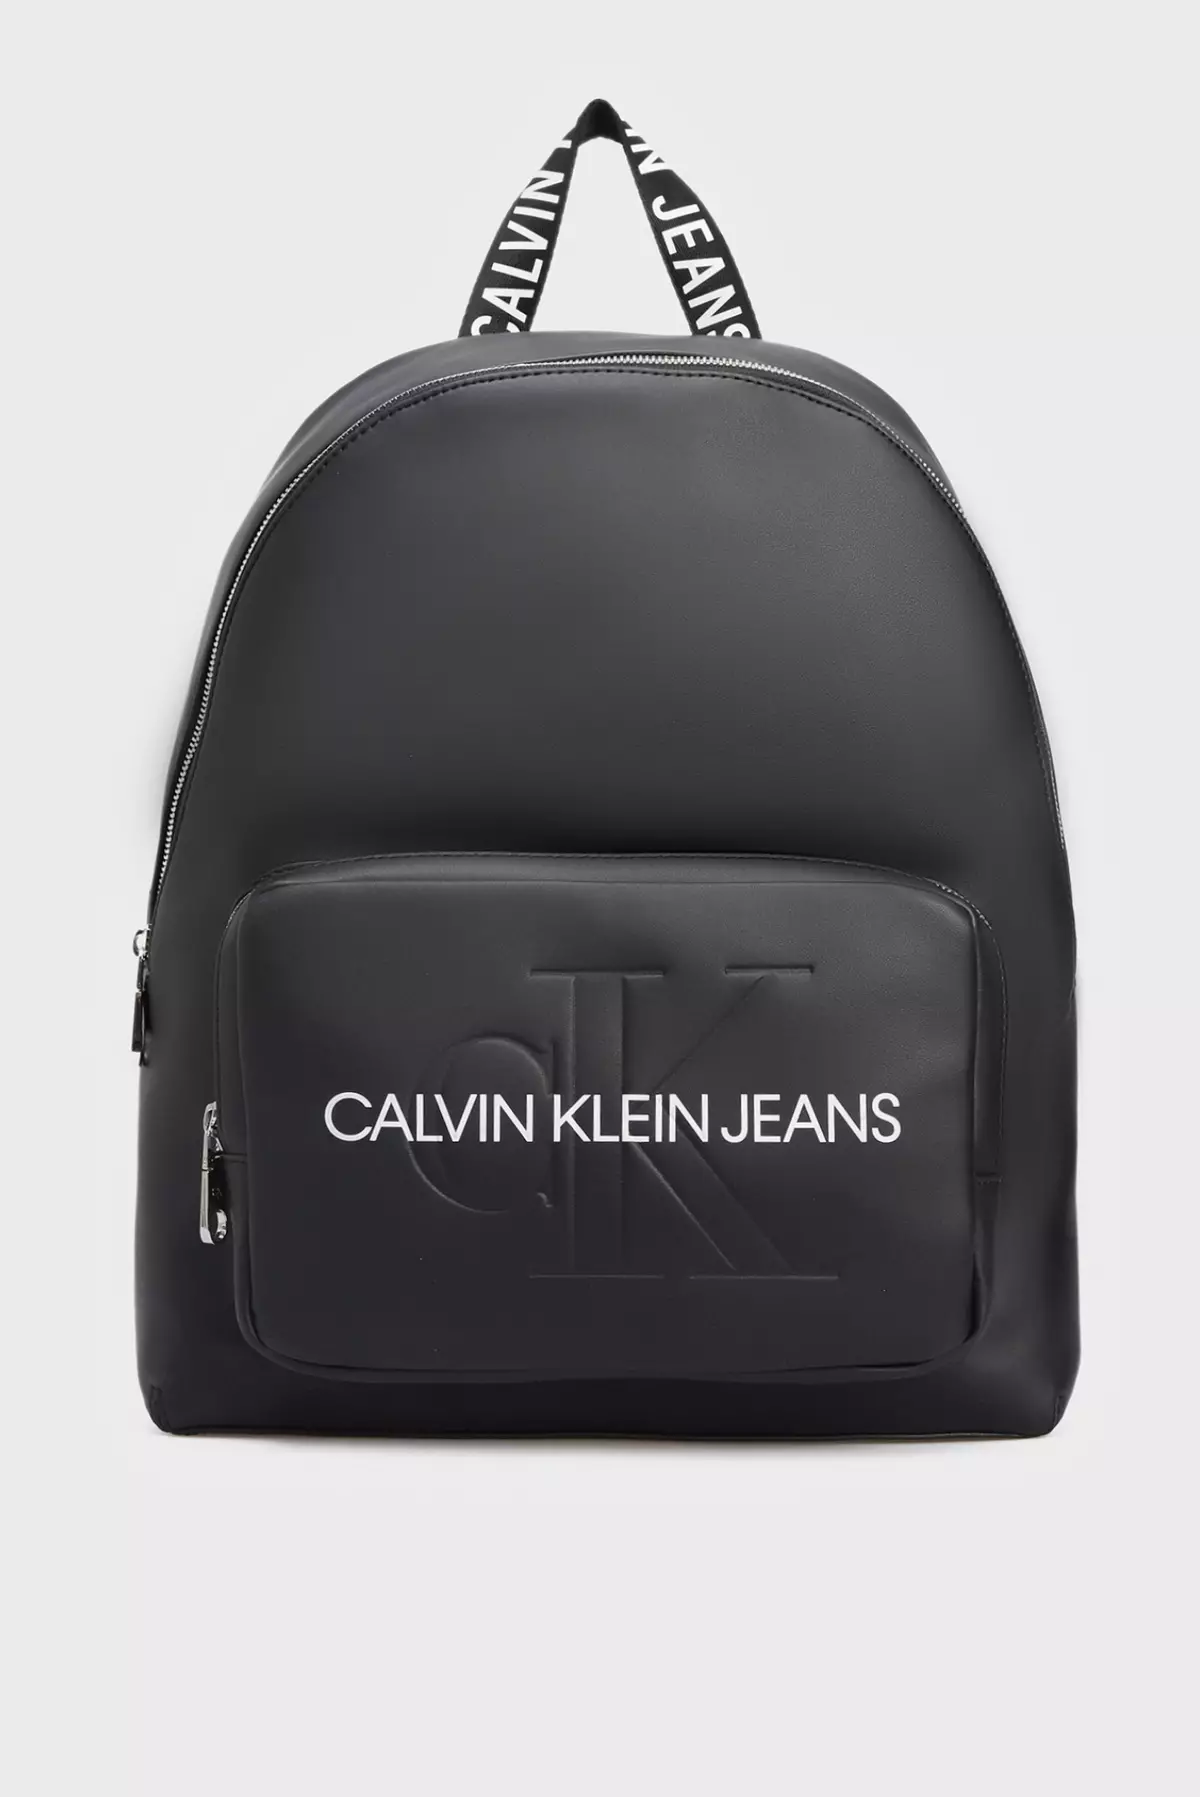 Backpacks Calvin Klein: femminili iswed u raġel, aħmar tal-ġilda, abjad, isfar b'monogramm u boroż oħra tal-kuluri - backpacks 15401_11